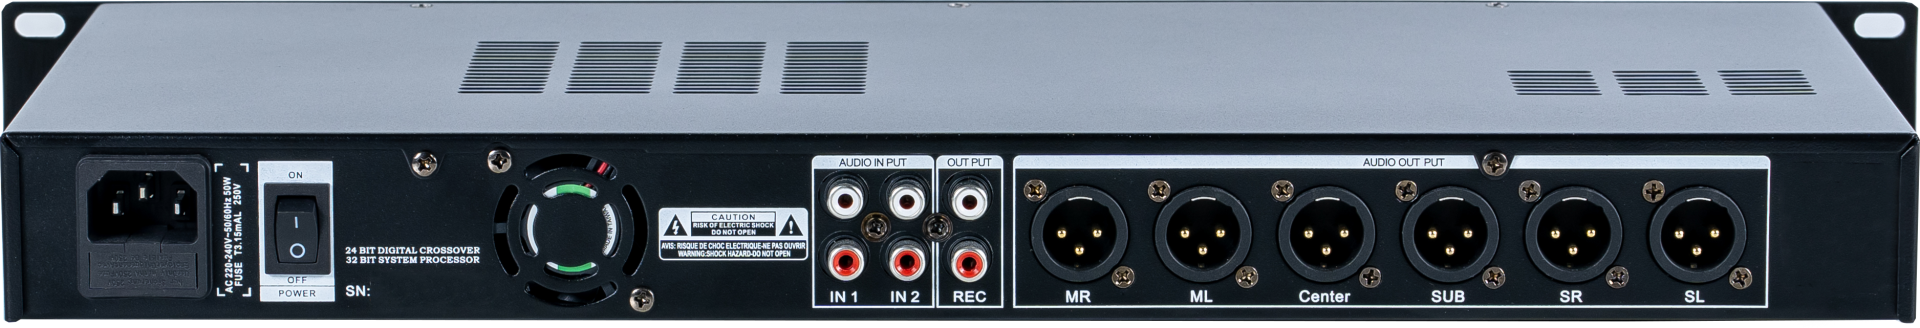 M6娱乐音响系统处理器